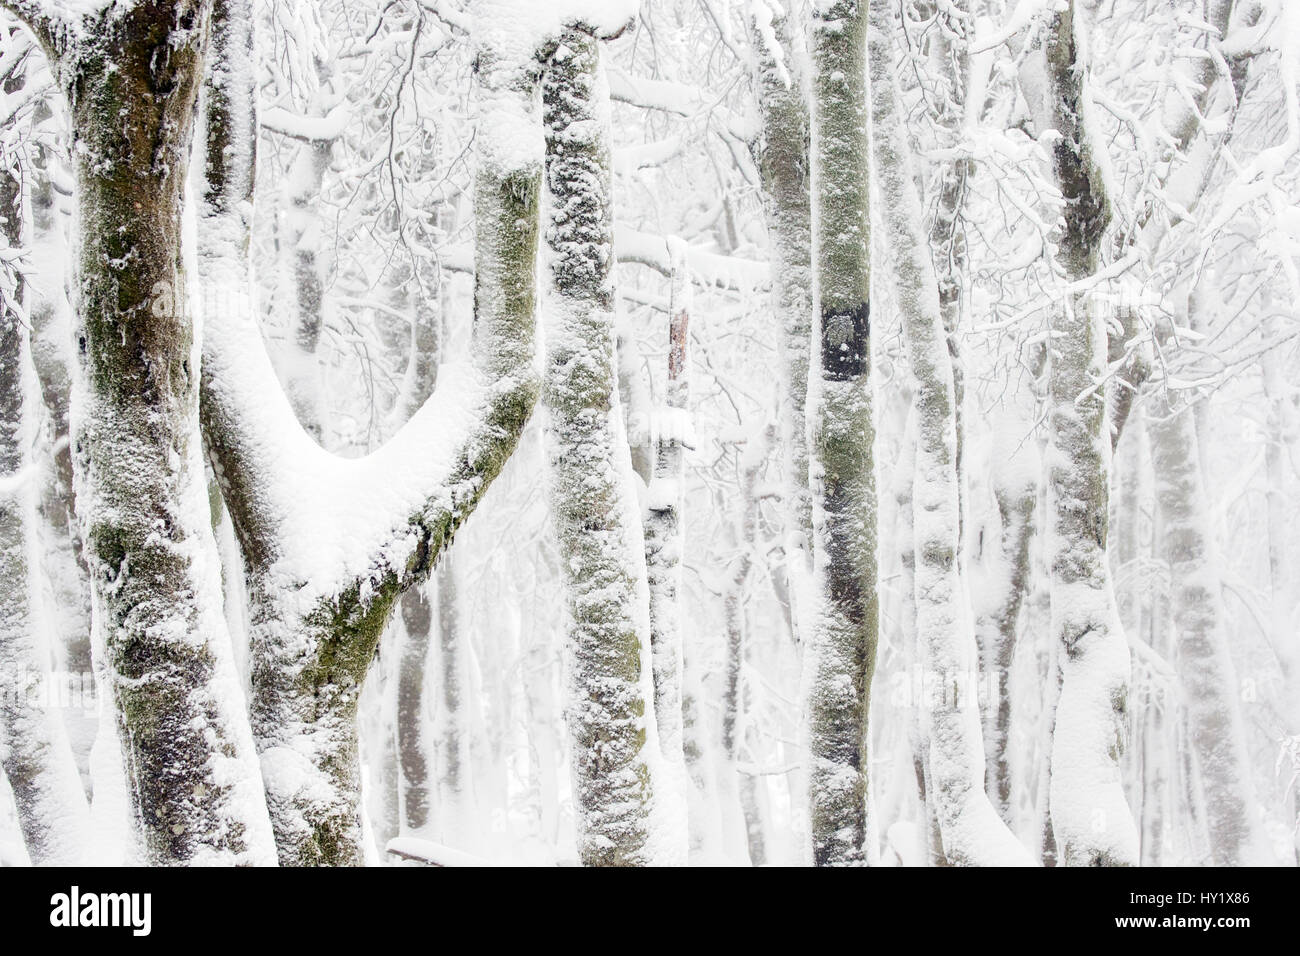 Europäische / gemeinsame Buche (Fagus Sylvatica) Baum Bäume mit Schnee bedeckt. Hohneck, Vogesen, Frankreich. Januar. Stockfoto